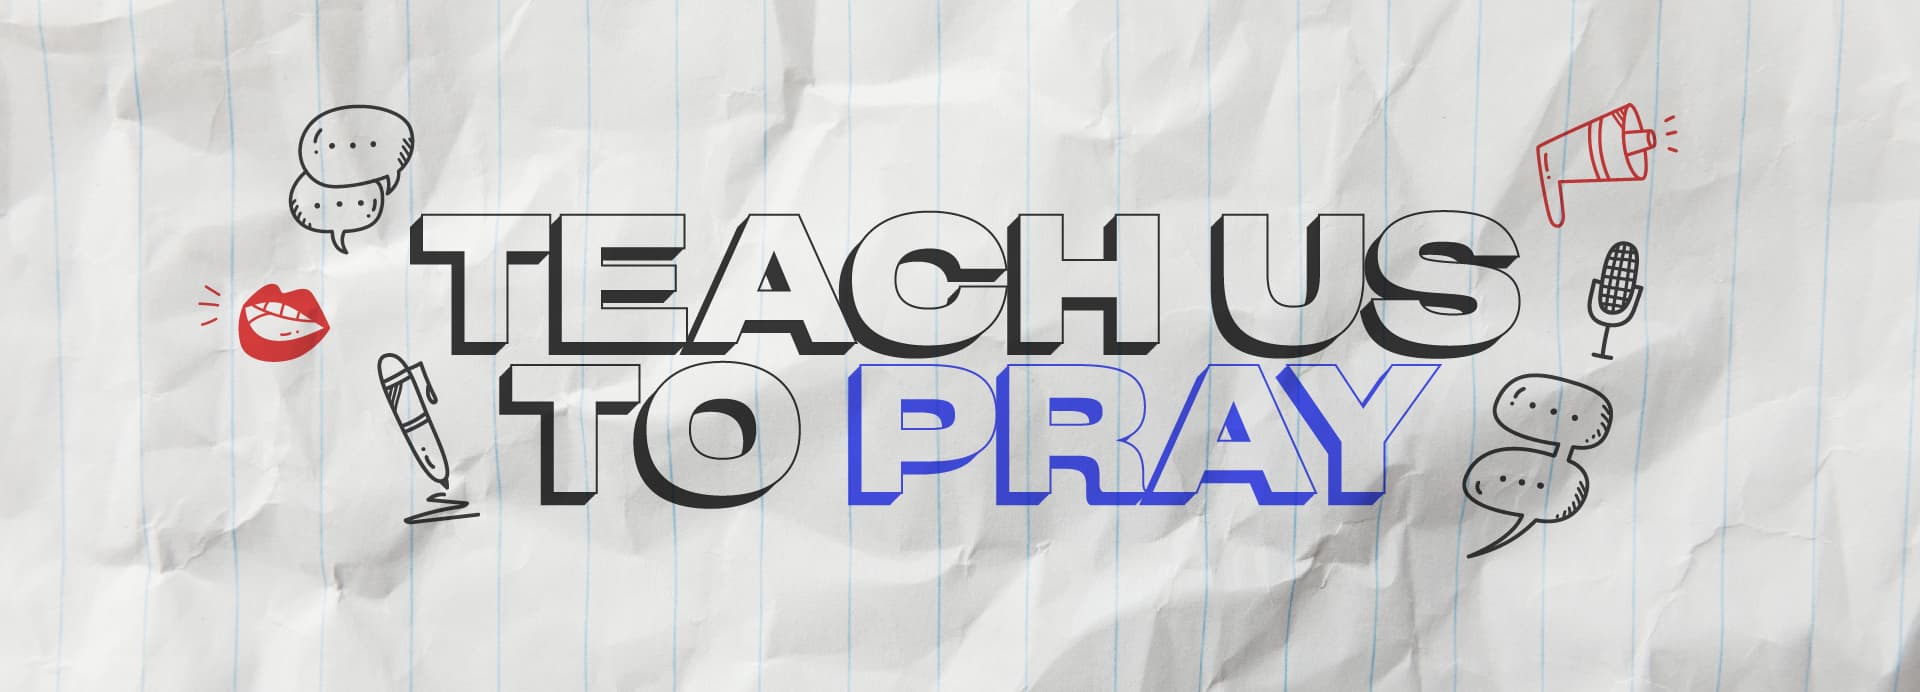 Teach Us to Pray_Blog Page Hero